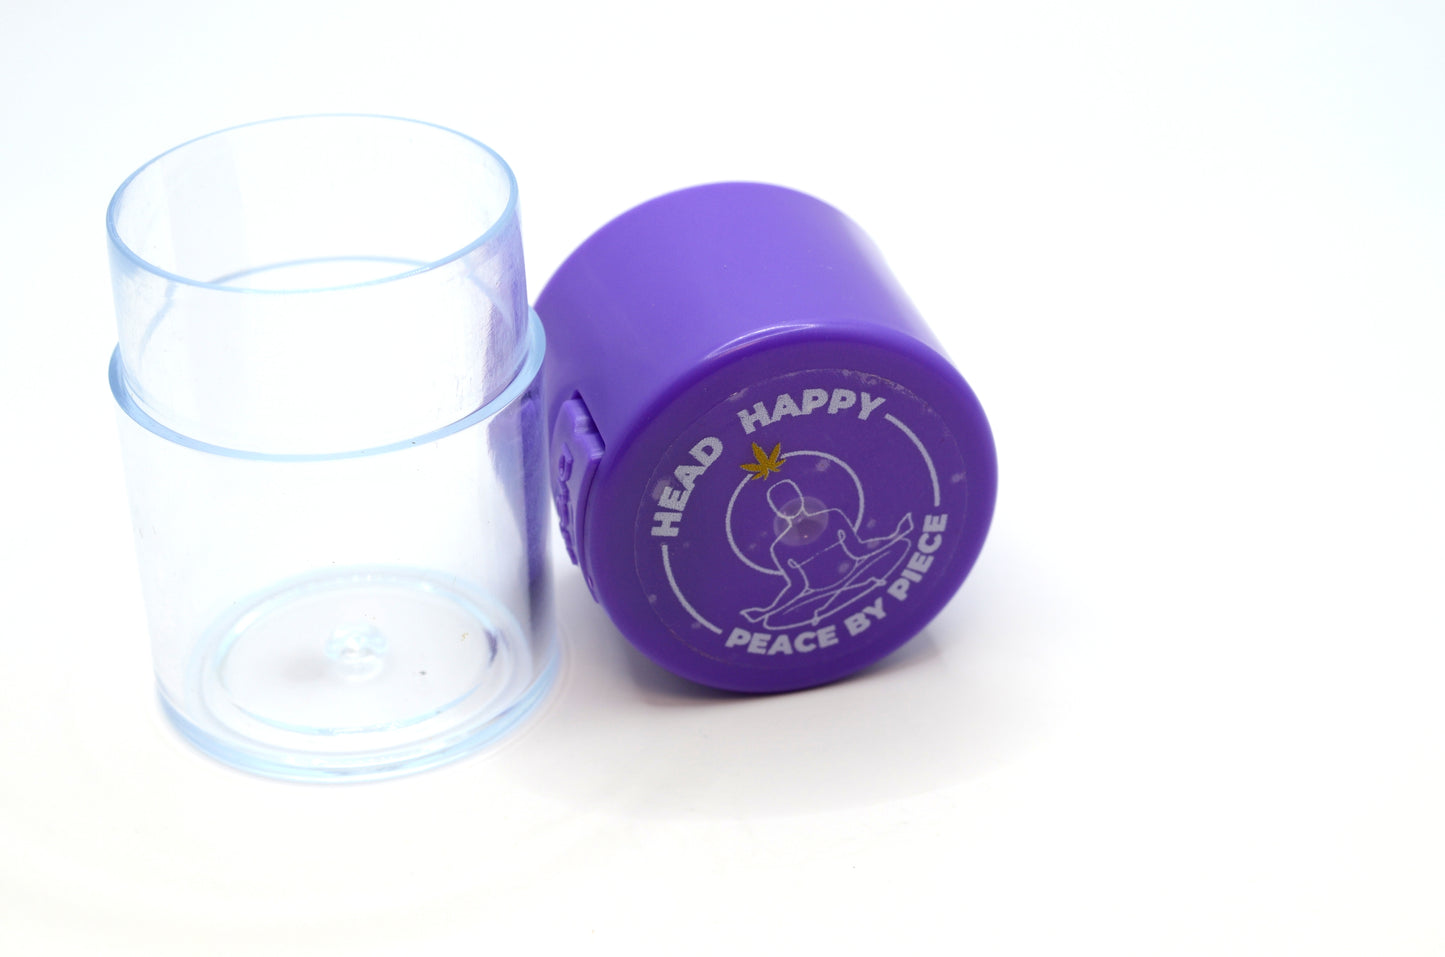 Head Happy - Plastic Airtight Vacuum Jar - Purple Series